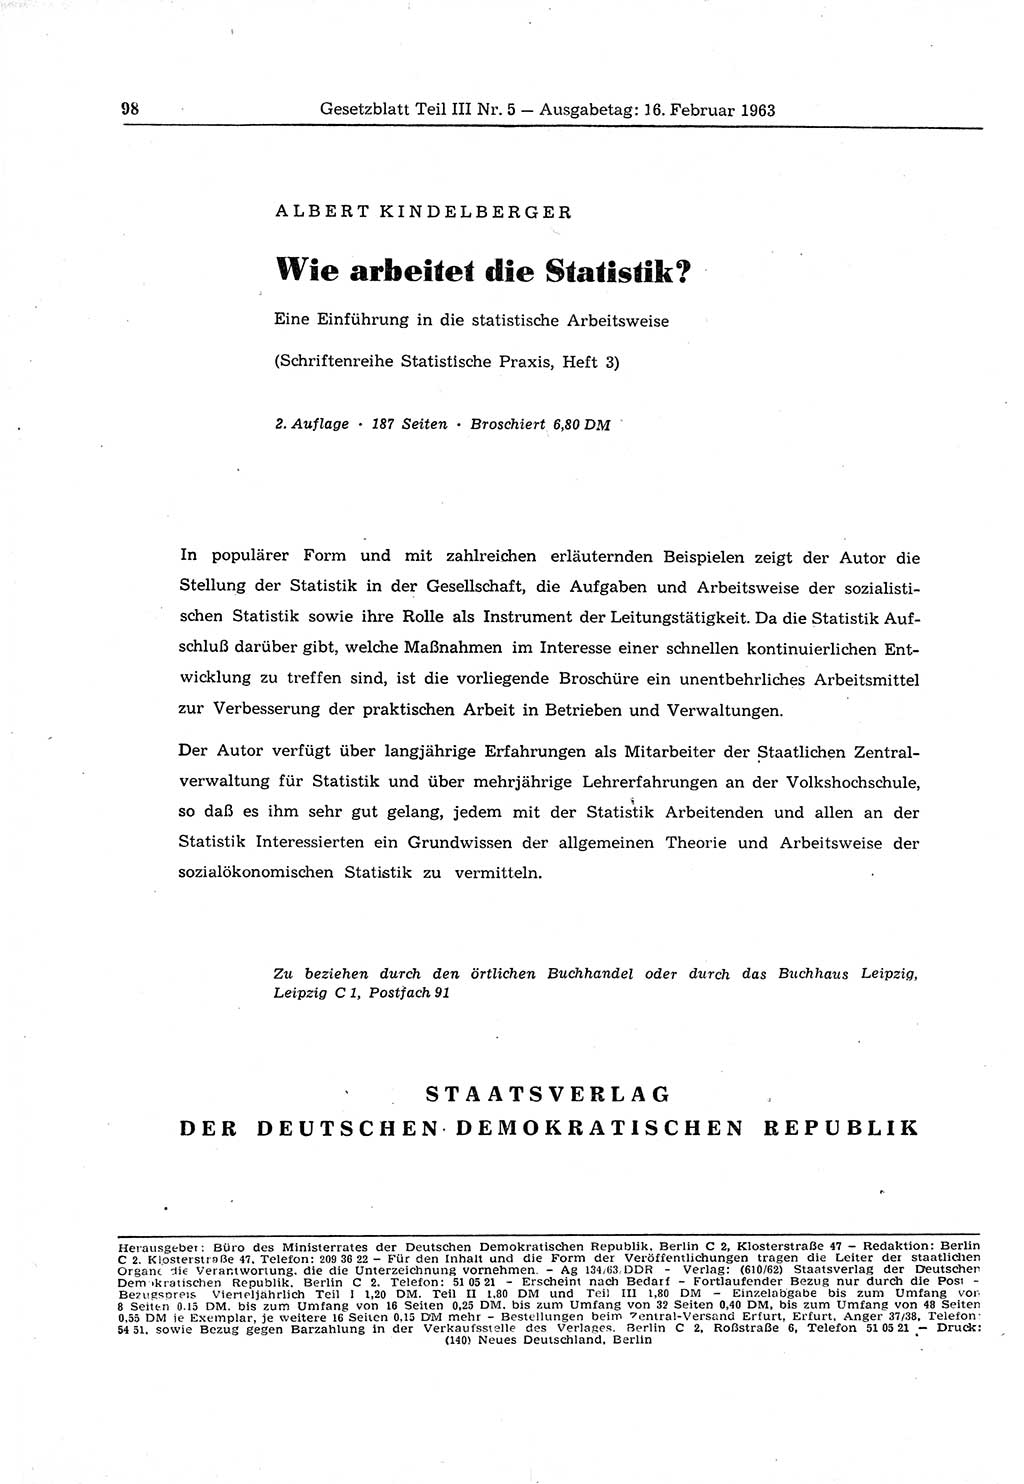 Gesetzblatt (GBl.) der Deutschen Demokratischen Republik (DDR) Teil ⅠⅠⅠ 1963, Seite 98 (GBl. DDR ⅠⅠⅠ 1963, S. 98)